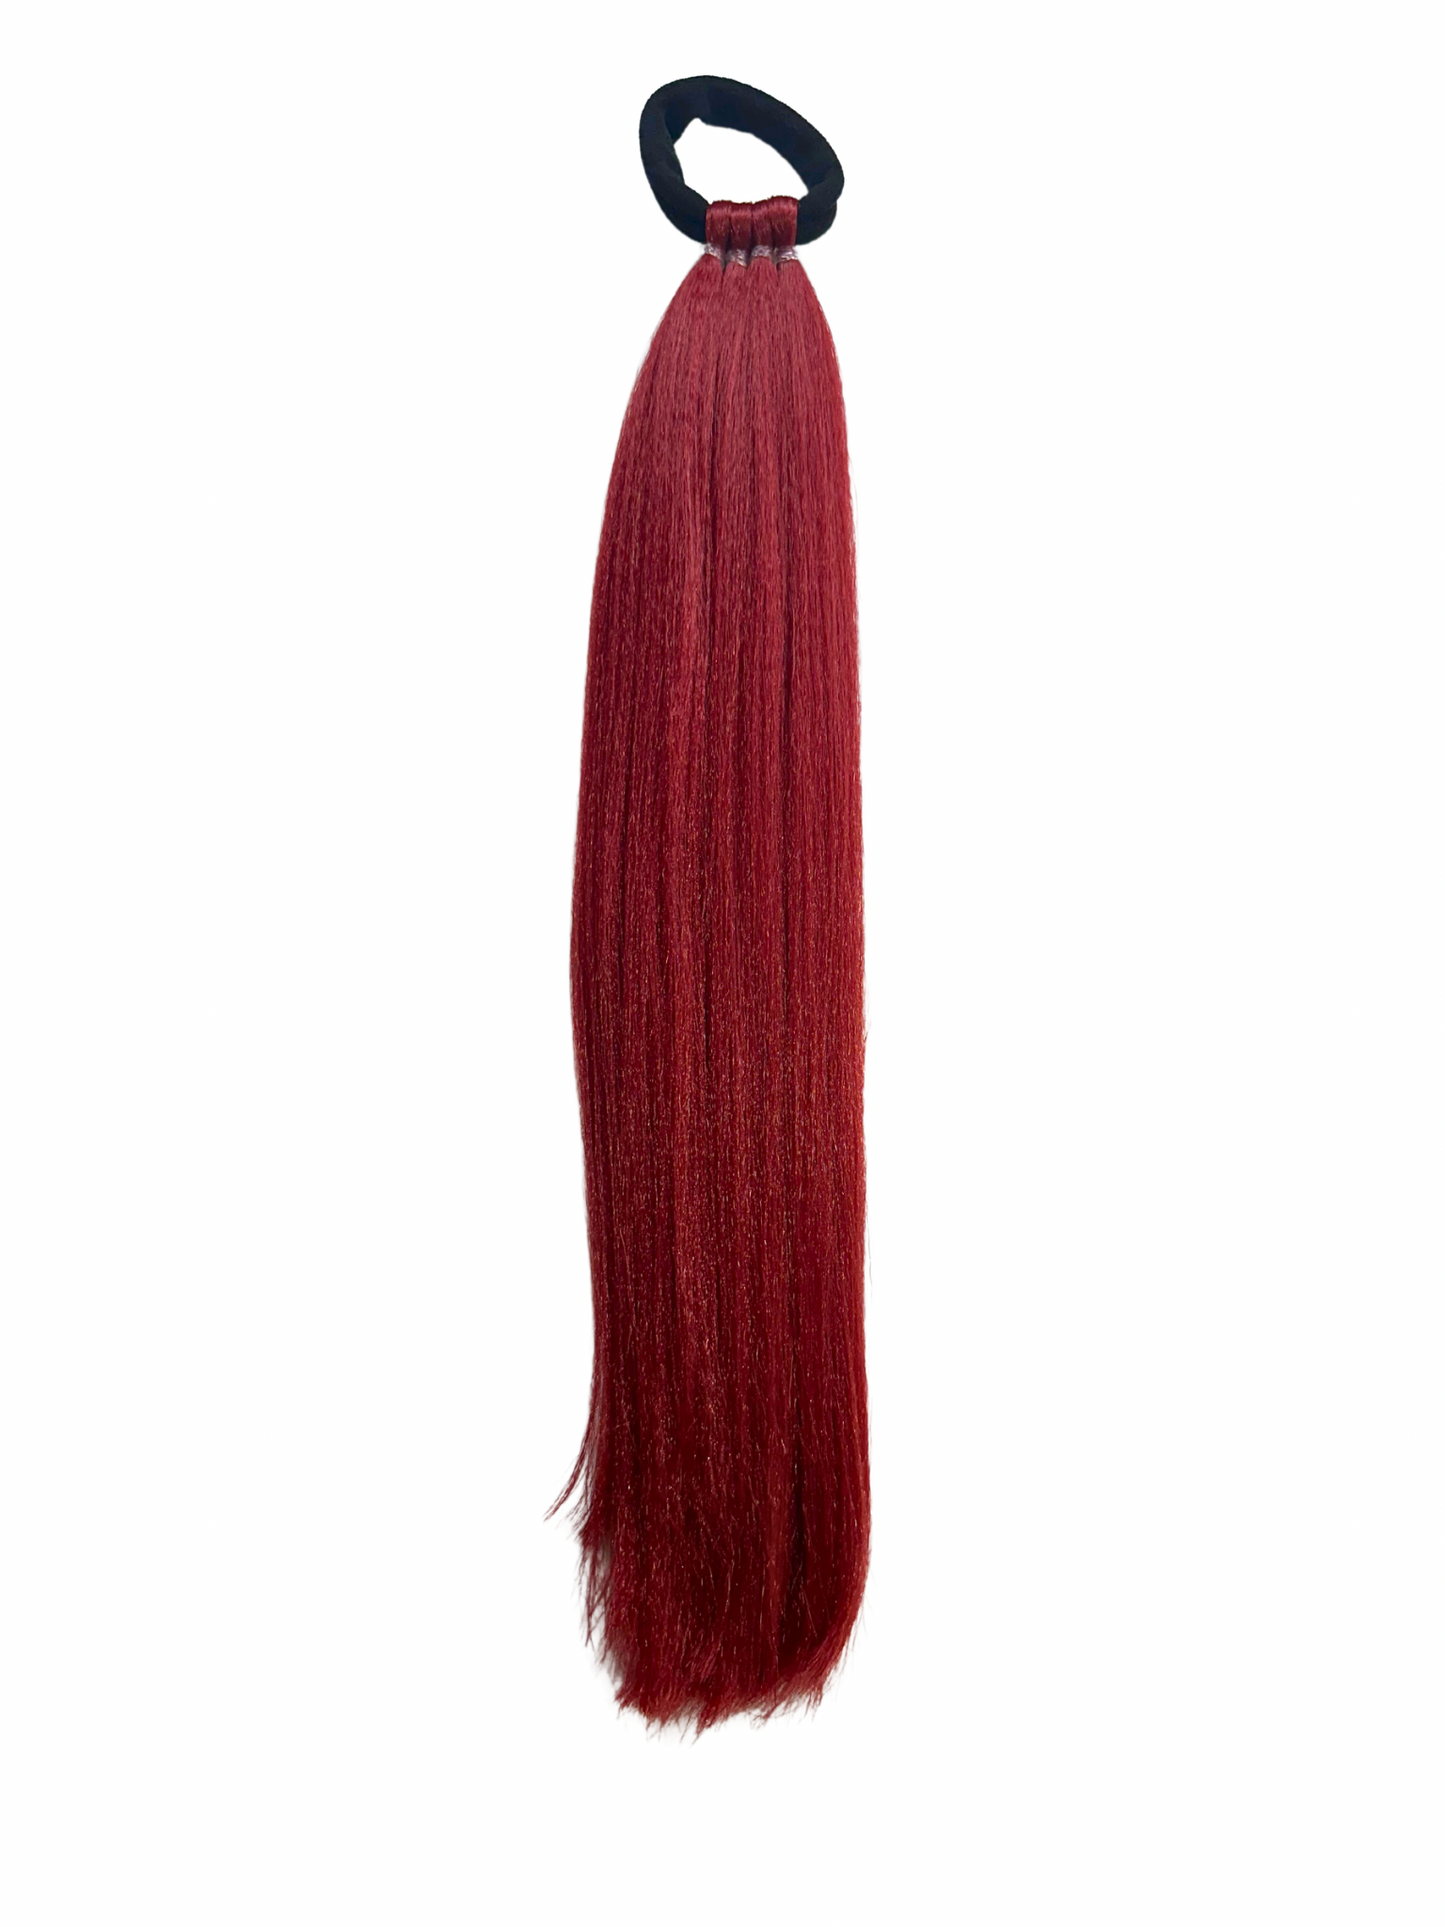 Maroon MINI single braid 30cm